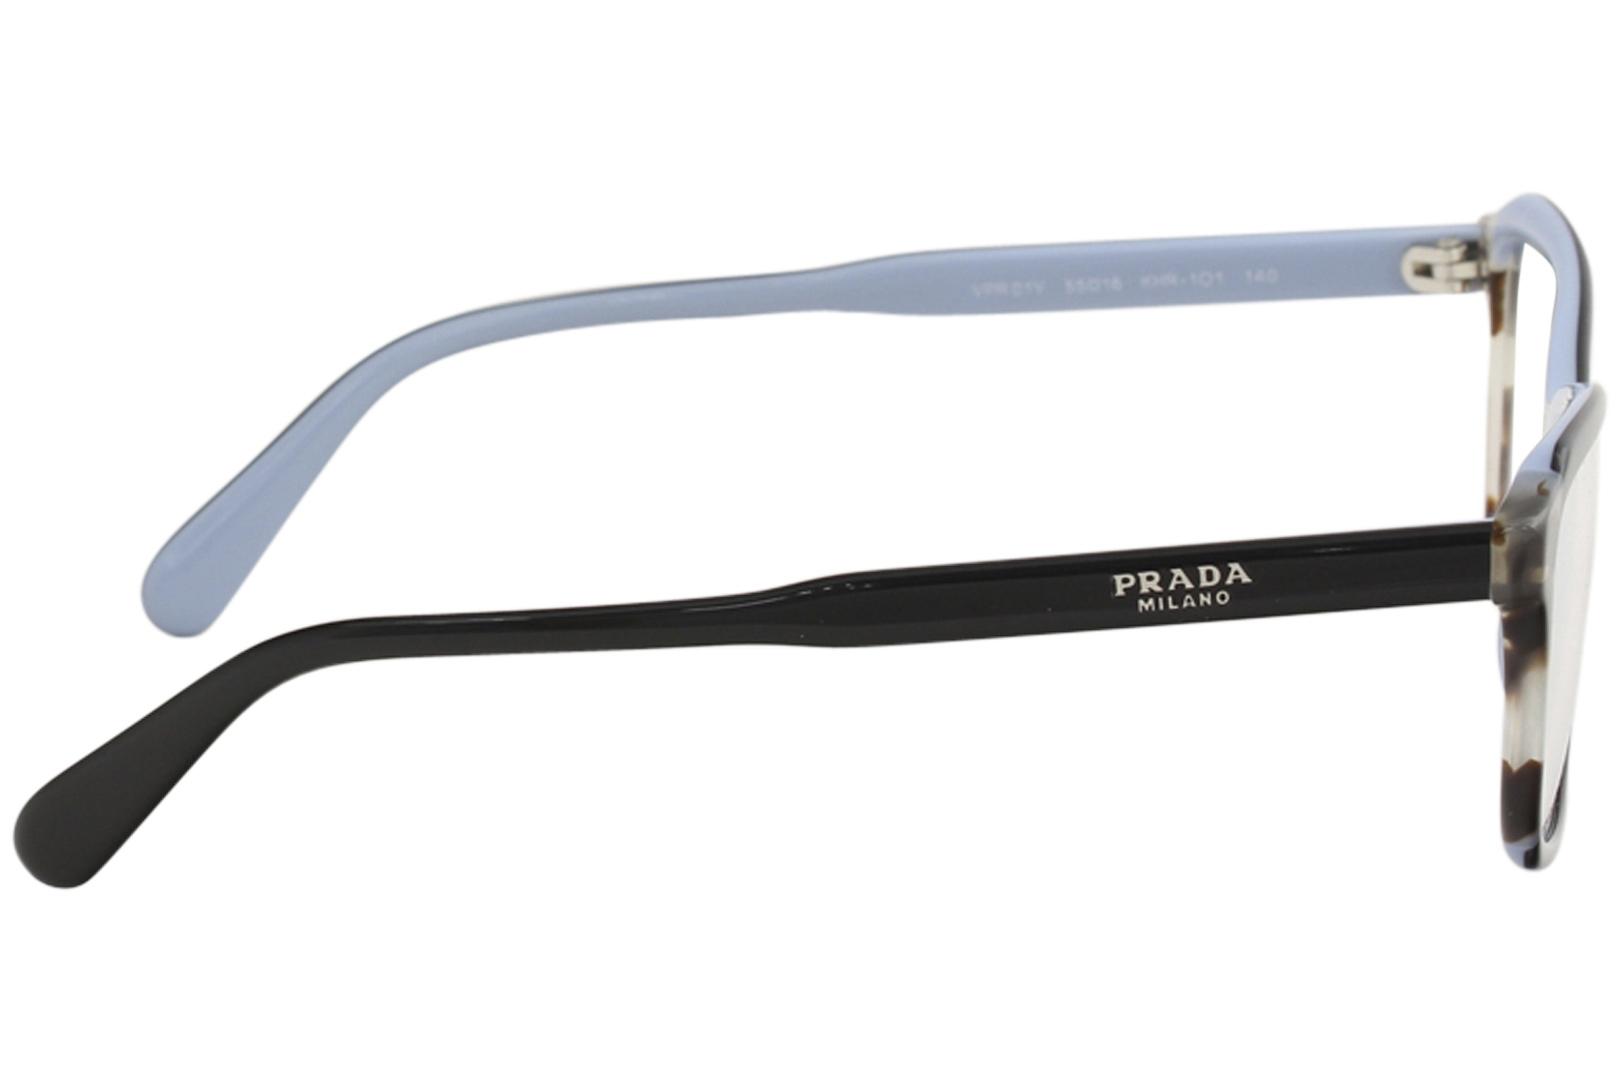 Prada Women S Eyeglasses Vpr01v Vpr 01 V Full Rim Optical Frame